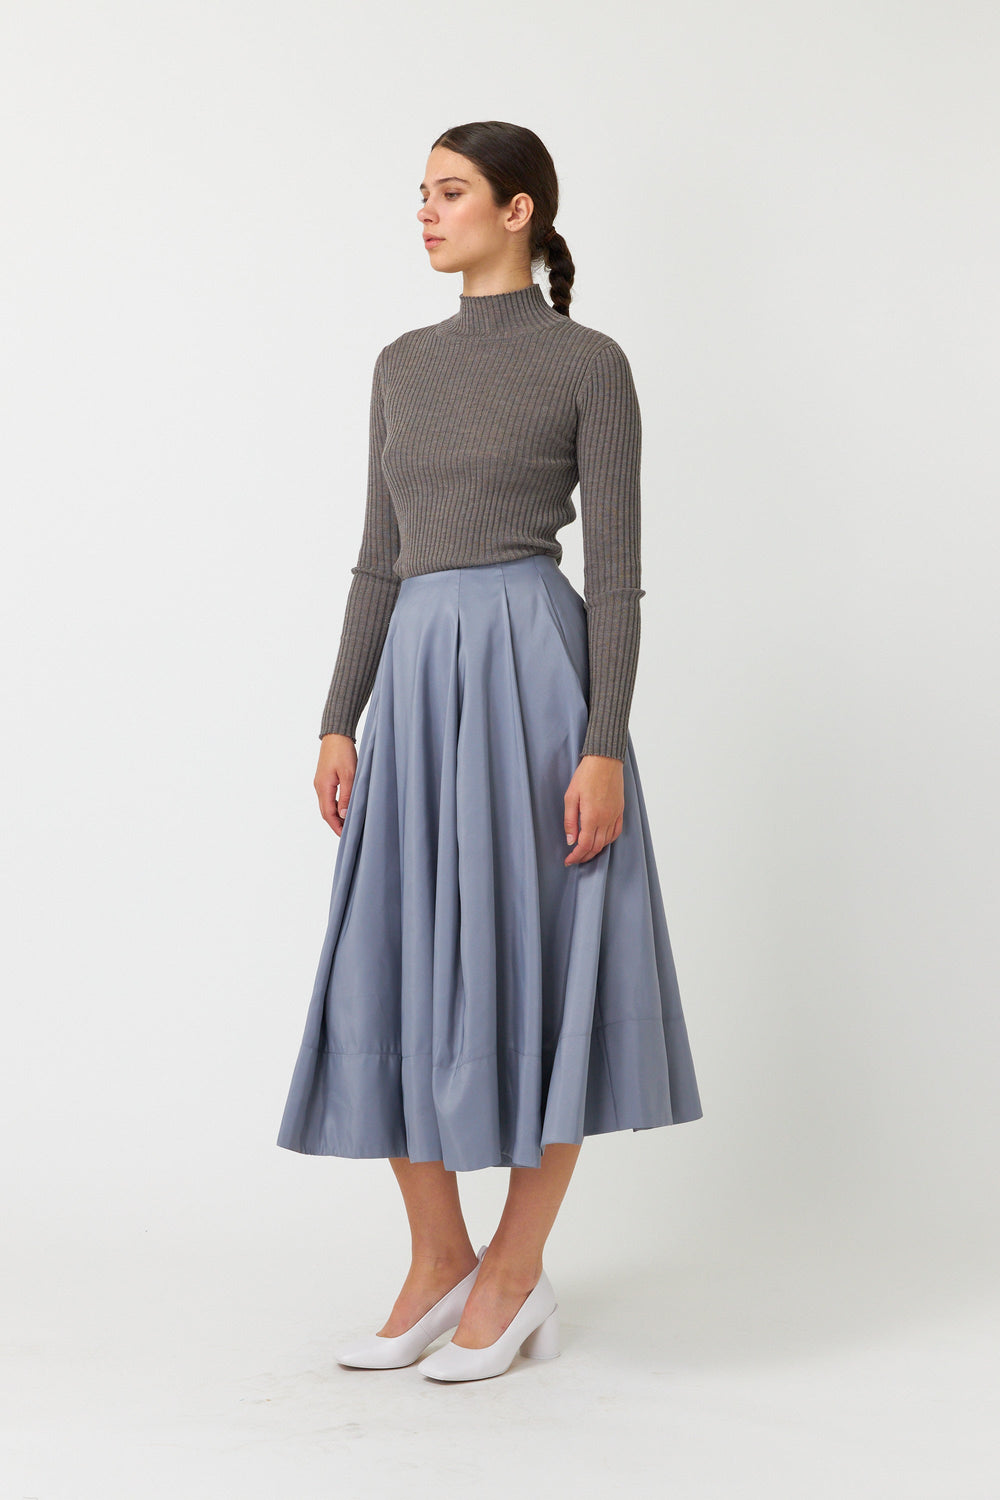 Belle skirt